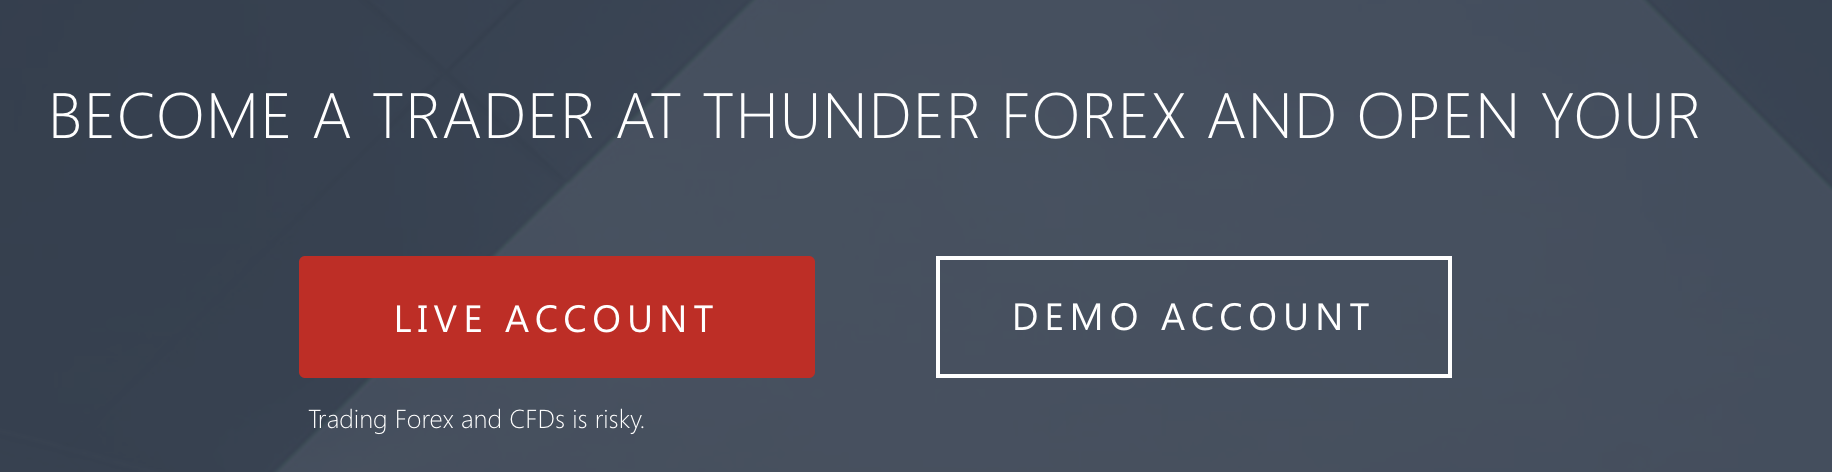 Khả năng thực hành giao dịch với tài khoản demo với Thunder forex